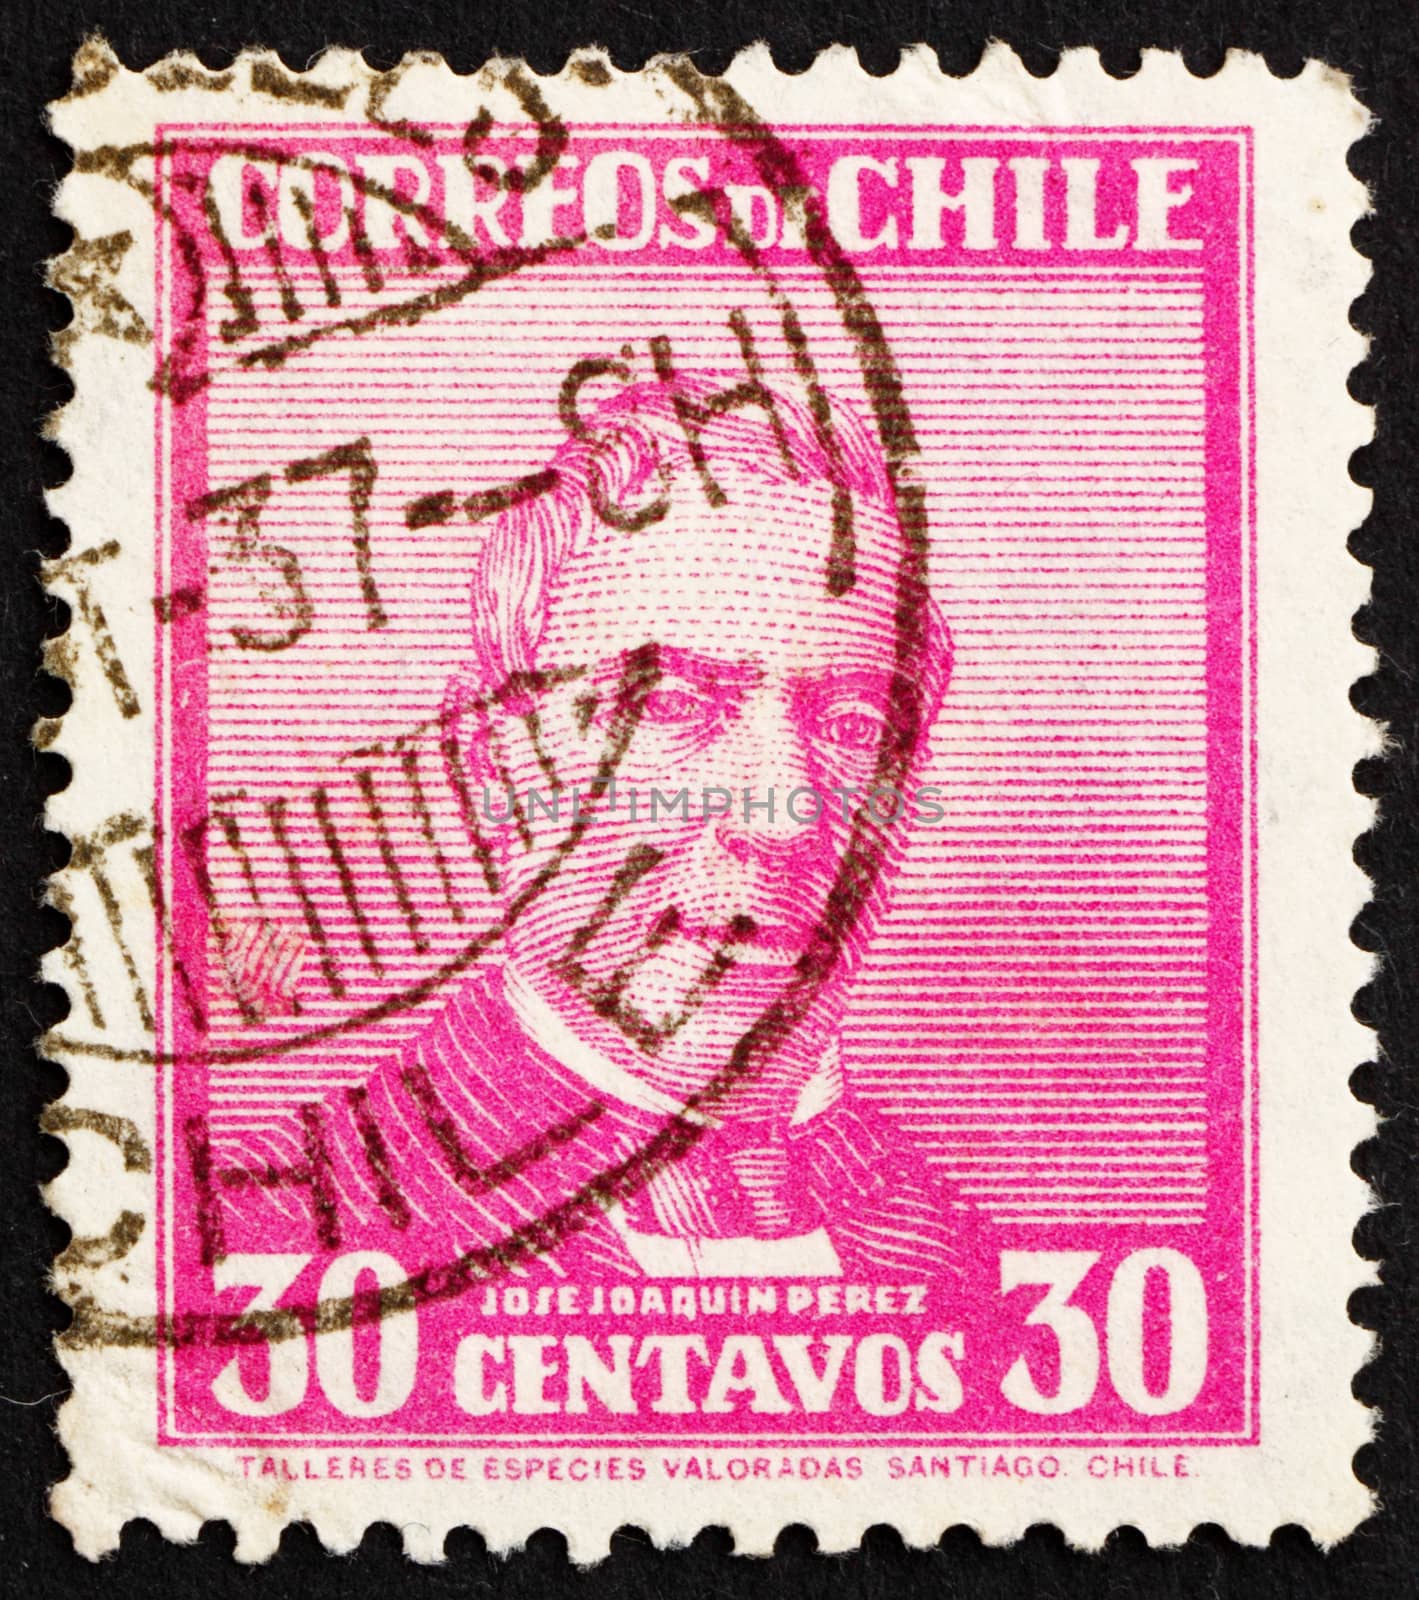 CHILE - CIRCA 1934: a stamp printed in the Chile shows Jose Joaquin Perez Mascayano, President of Chile, 1861 - 1871, circa 1934